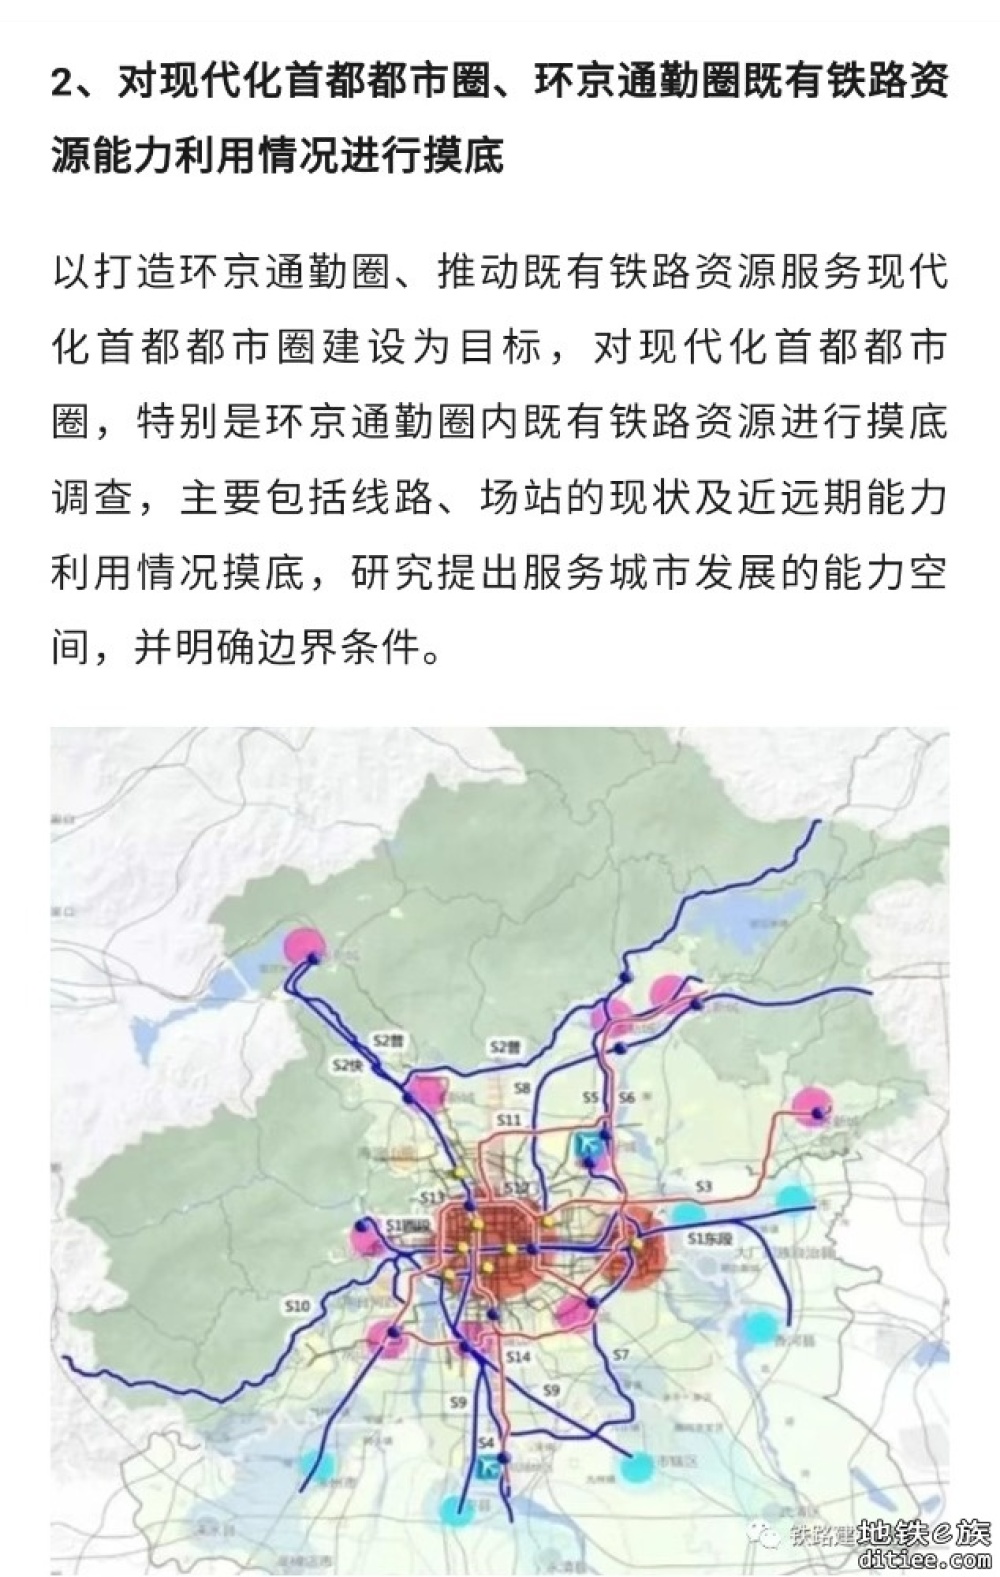 北京市启动既有铁路服务城市交通调查摸底工作